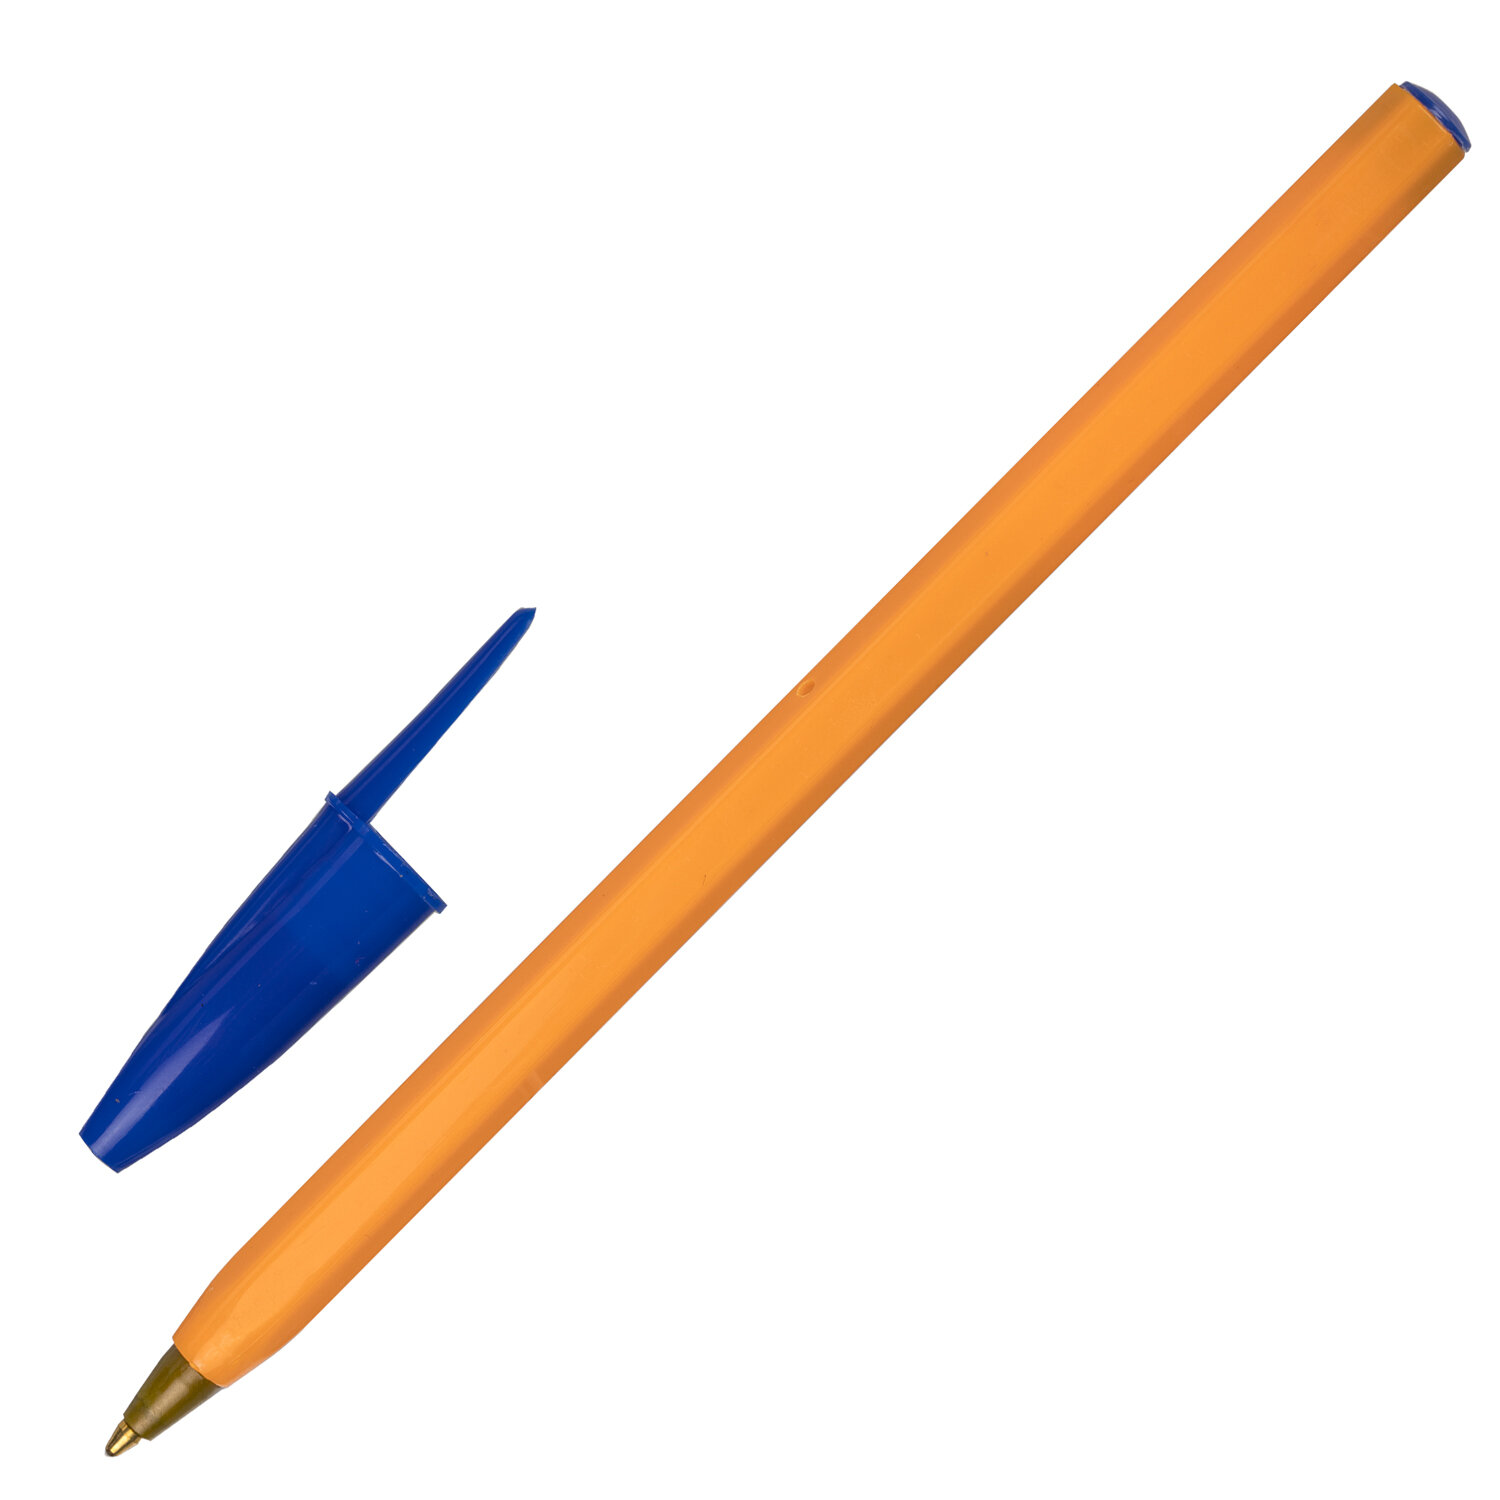 143740, (цена за 50 шт.) Ручка шариковая STAFF "Basic Orange BP-01", письмо 750 метров, СИНЯЯ, длина корпуса 14 см, узел 1 мм, 143740